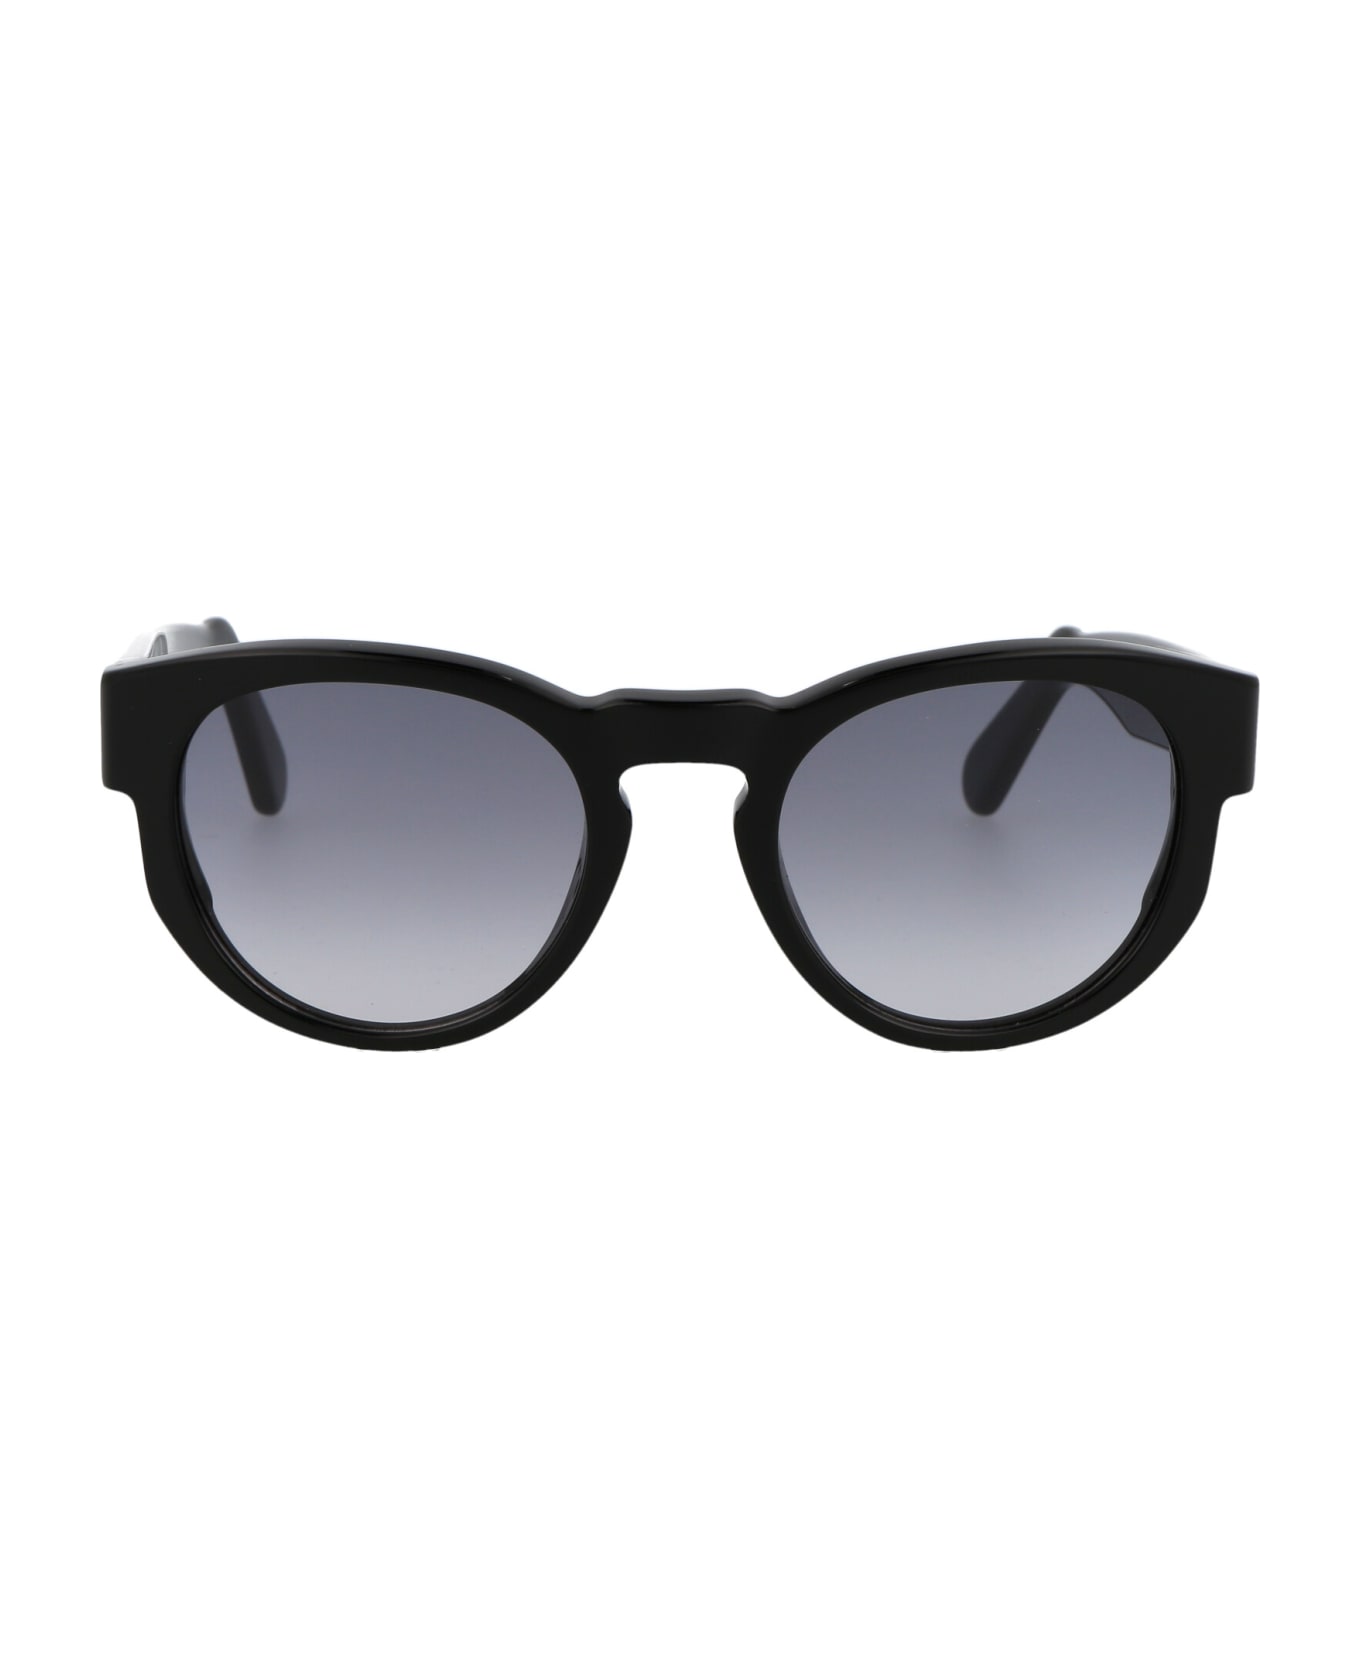 GCDS Gd0011 Sunglasses - 01B Nero Lucido/Fumo Grad